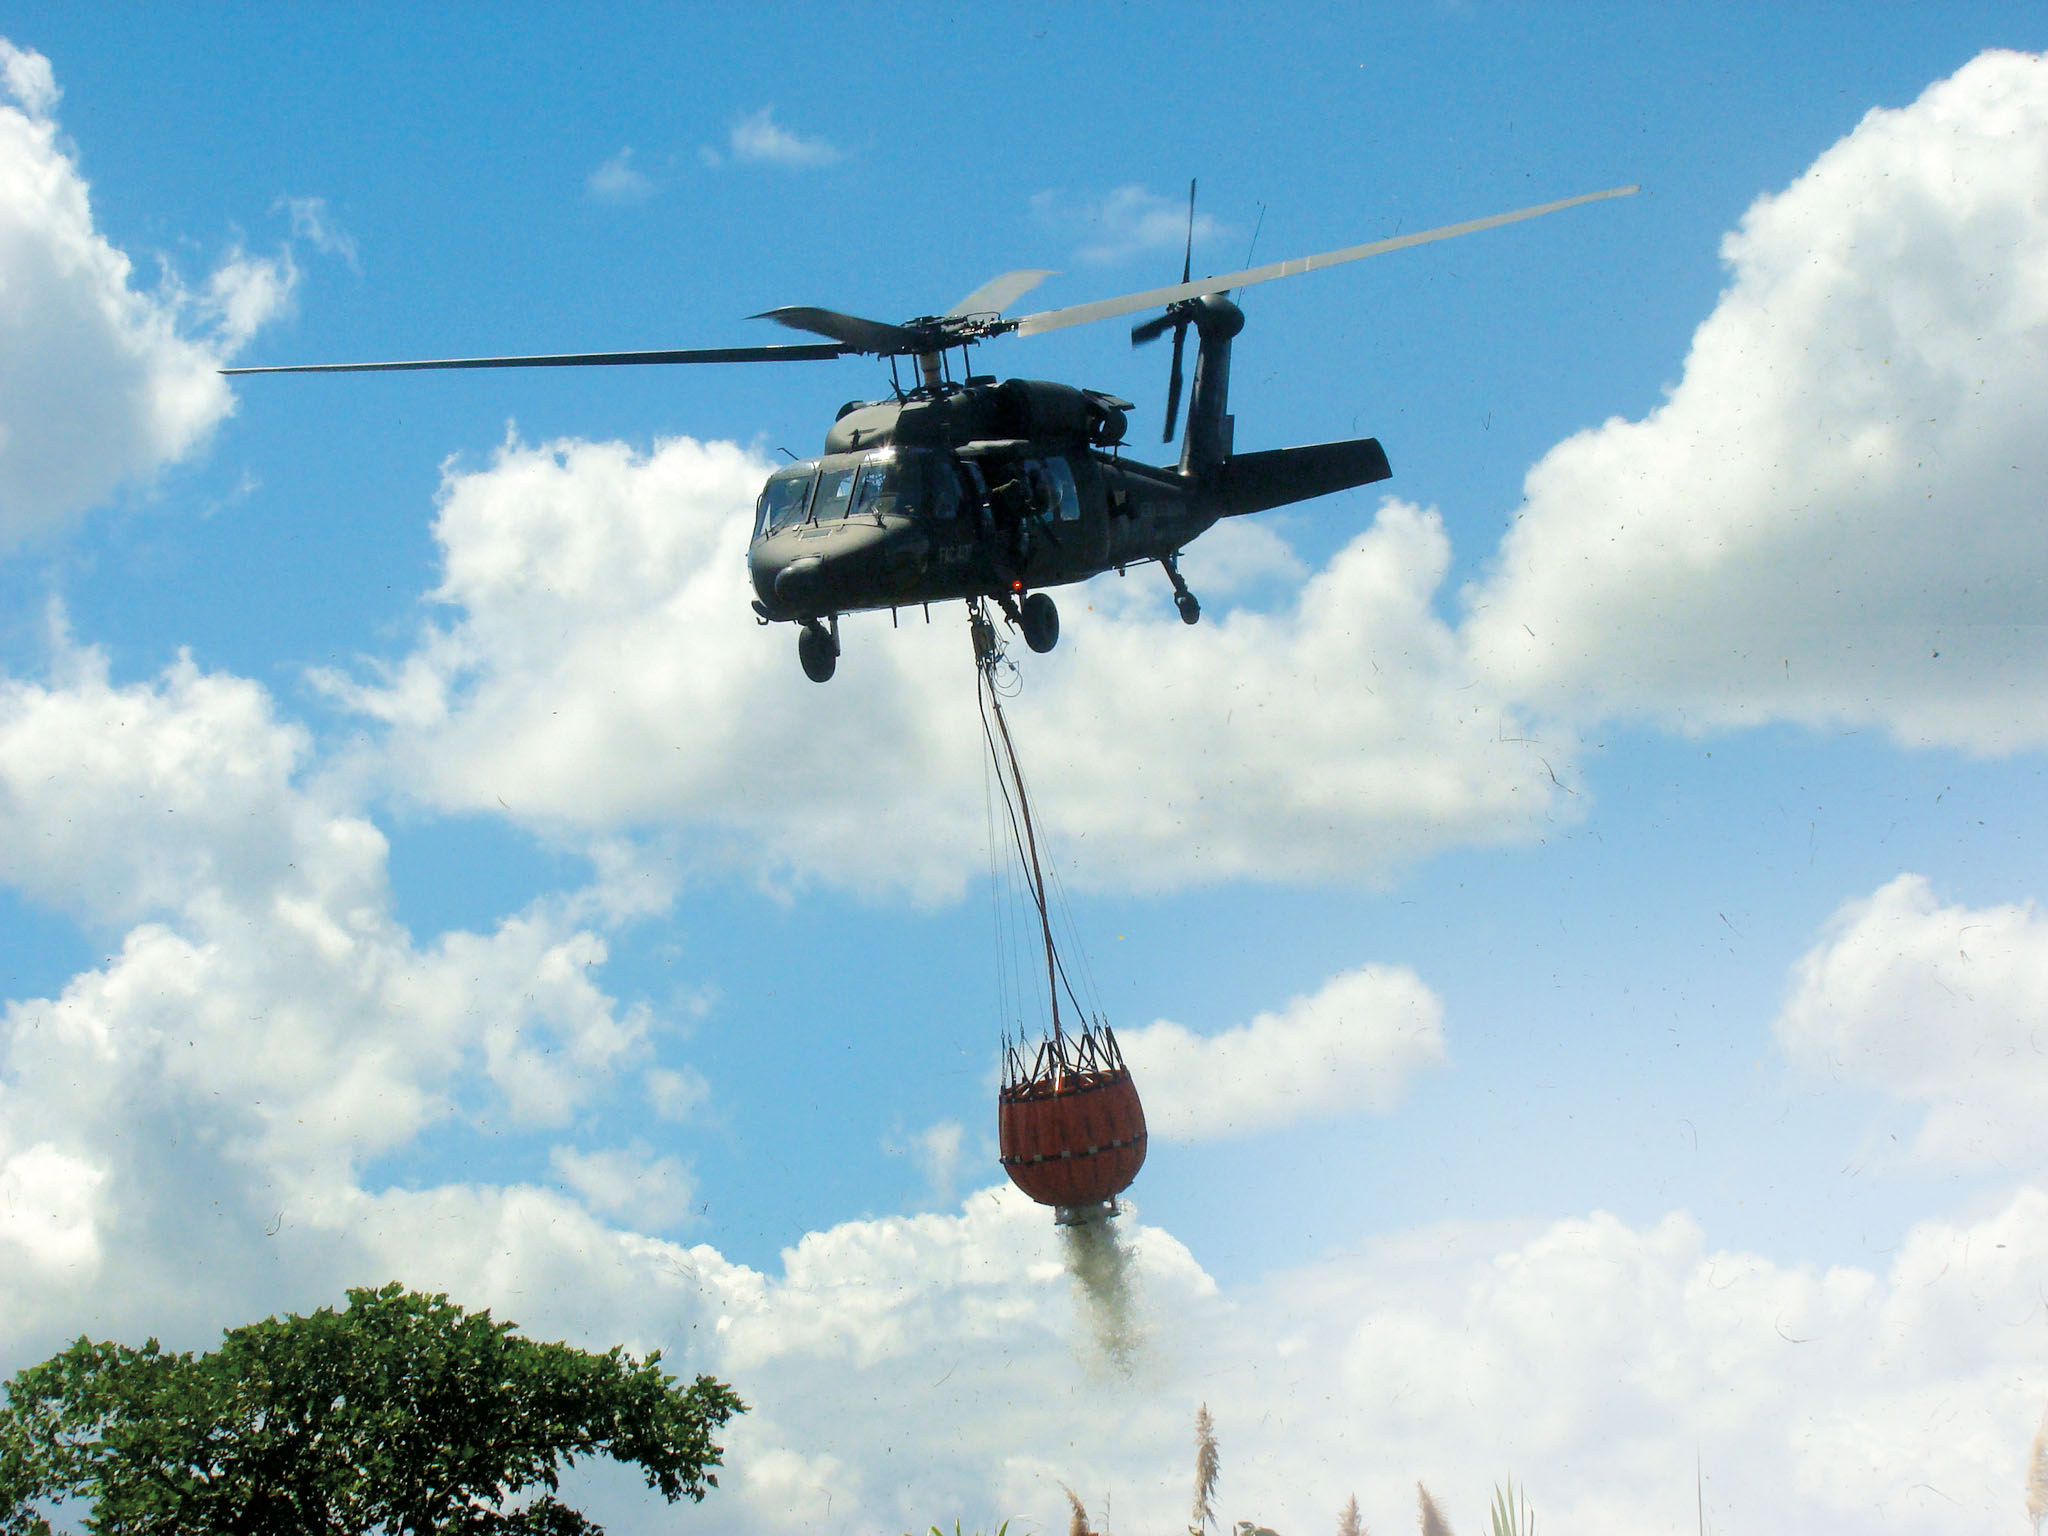 Black Hawk UH – 60 con sistema Bambi Bucket controla los incendios forestales que se presentan en épocas de sequía, en apoyo a los trabajos de extinción que realizan los organismos de socorro en tierra. 